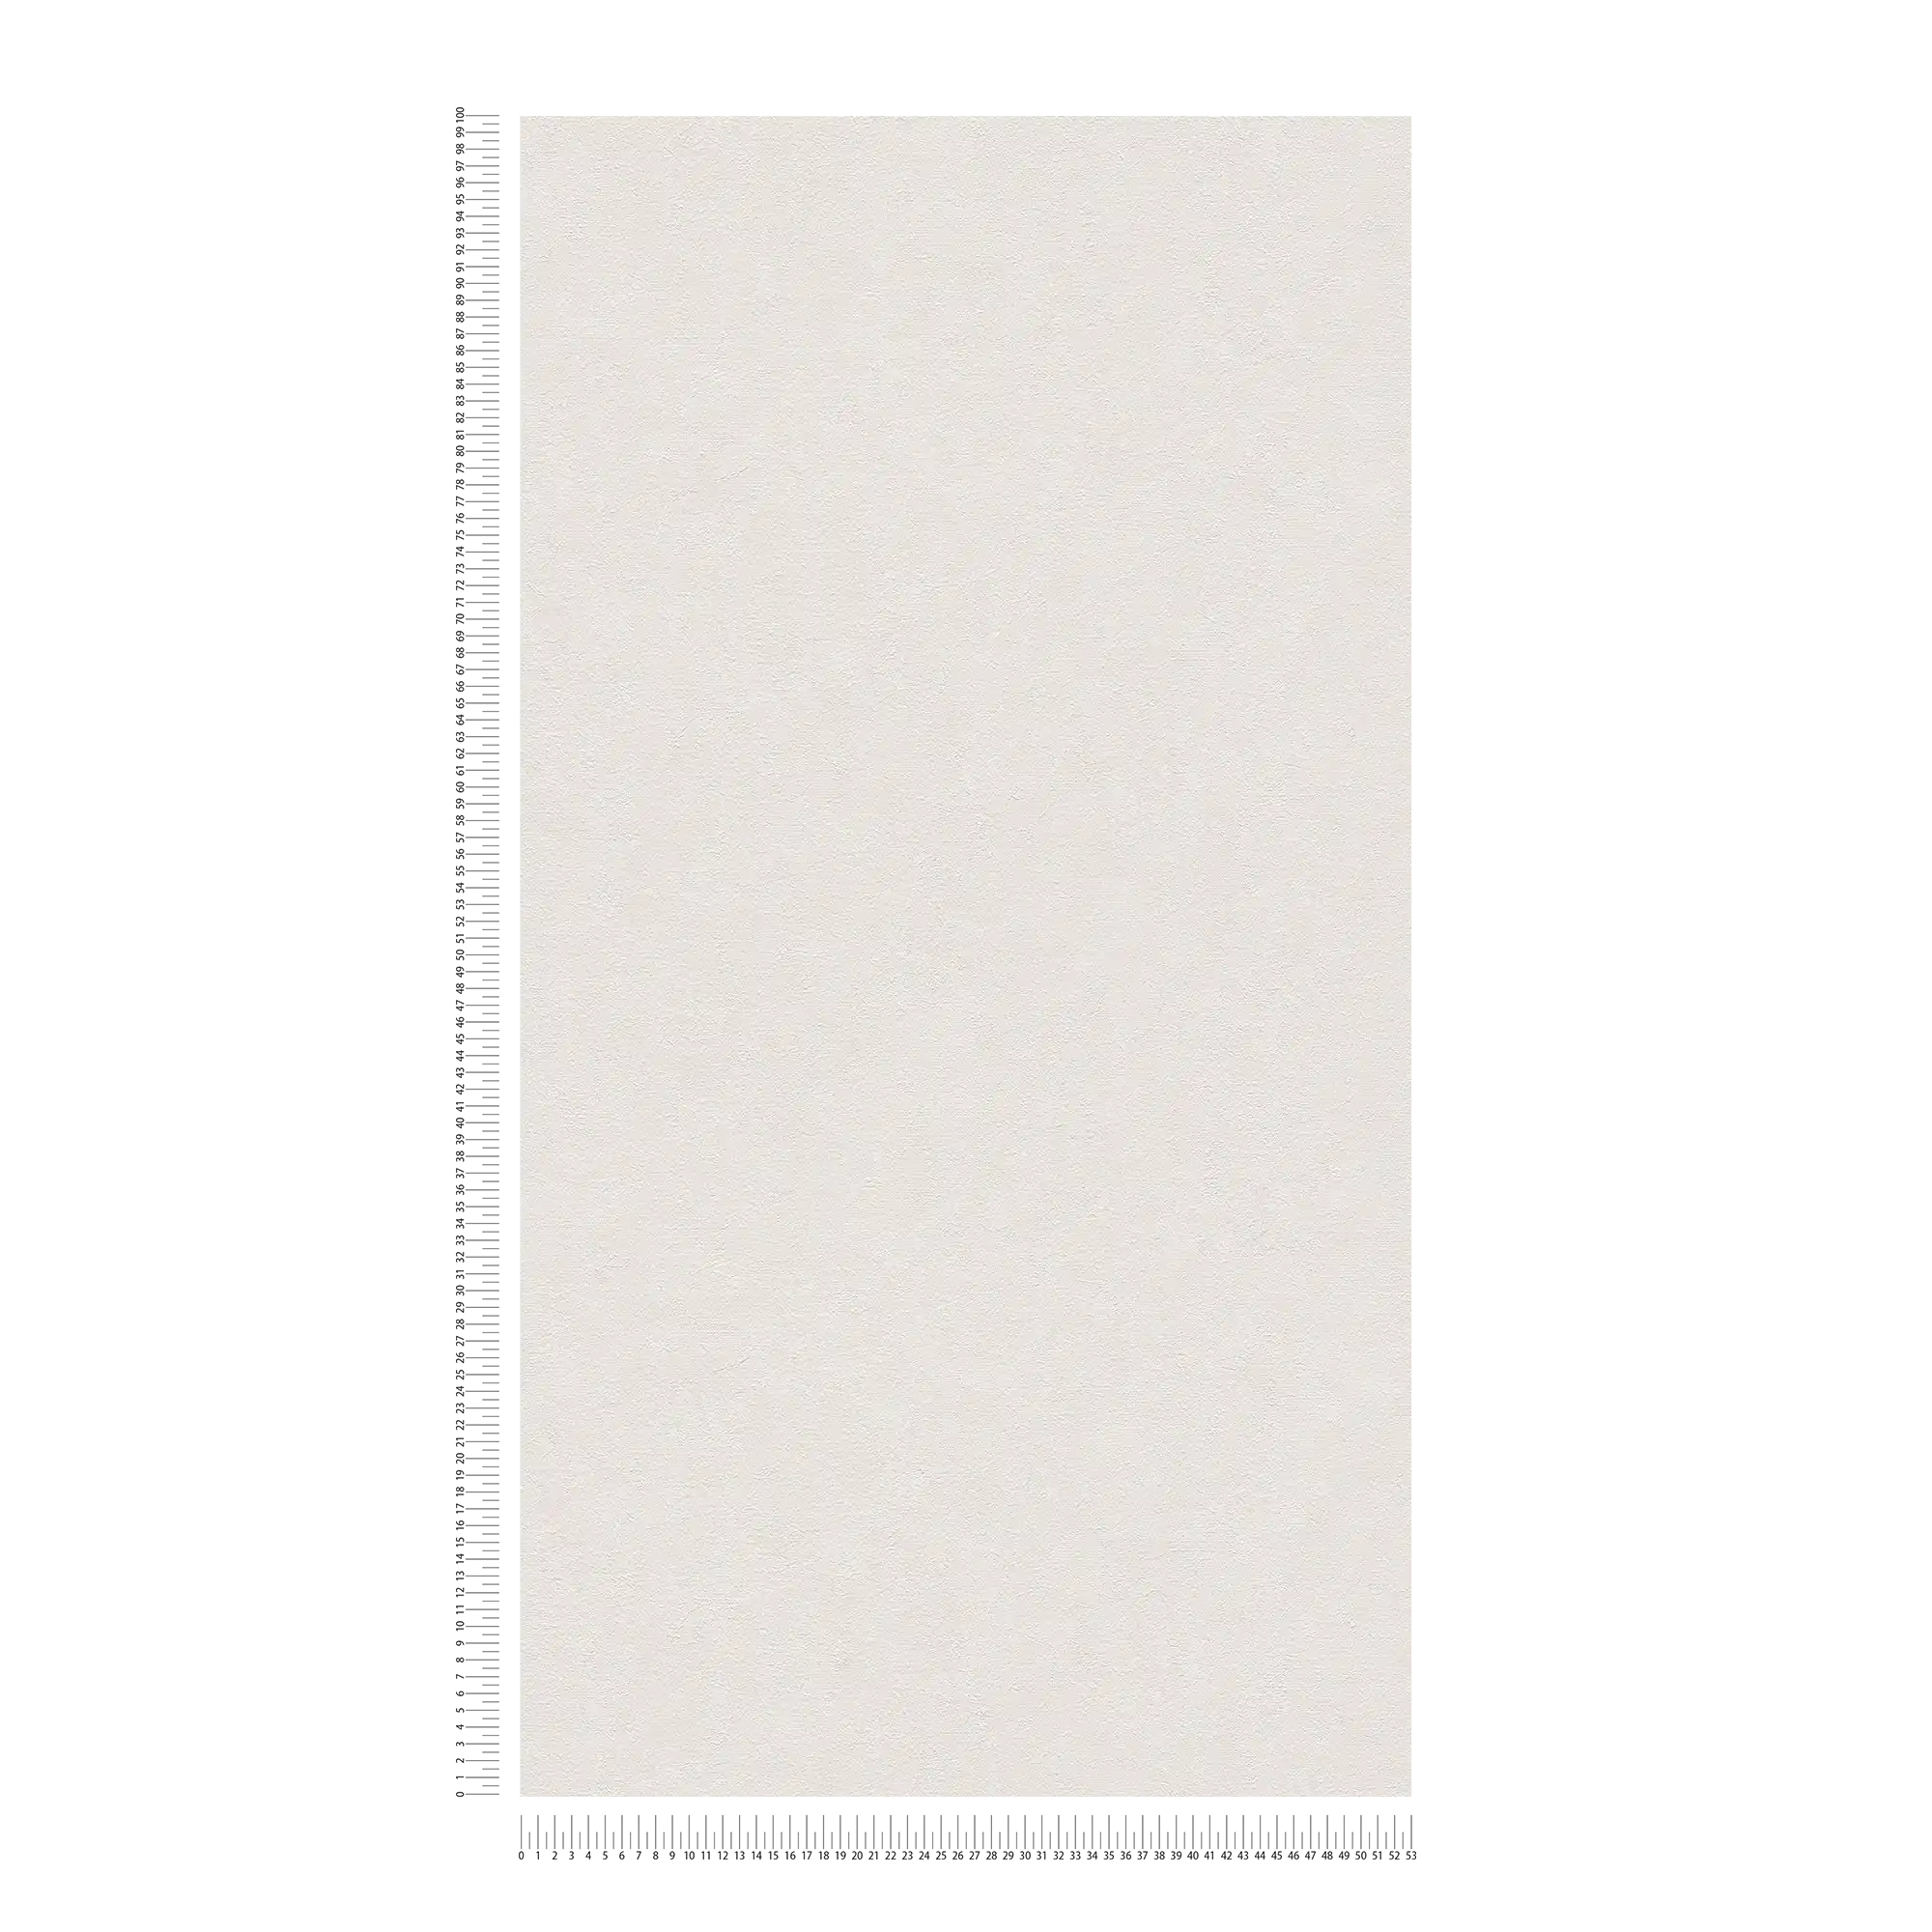             Uni Tapete mit Putzoptik & Farbschraffur – Creme, Weiß
        